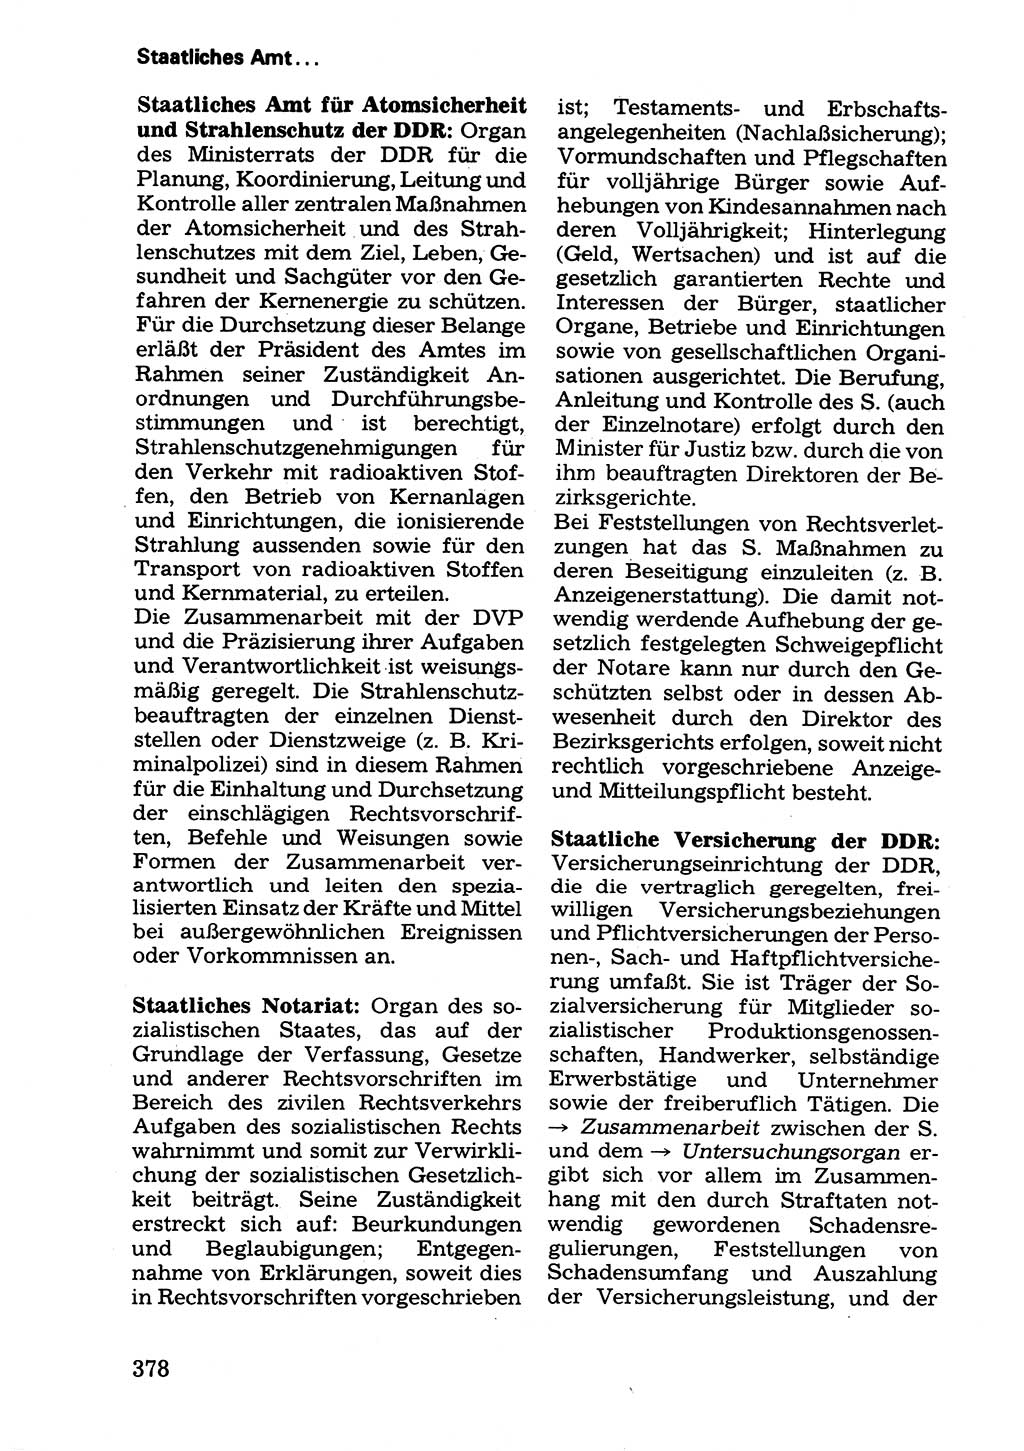 Wörterbuch der sozialistischen Kriminalistik [Deutsche Demokratische Republik (DDR)] 1981, Seite 378 (Wb. soz. Krim. DDR 1981, S. 378)